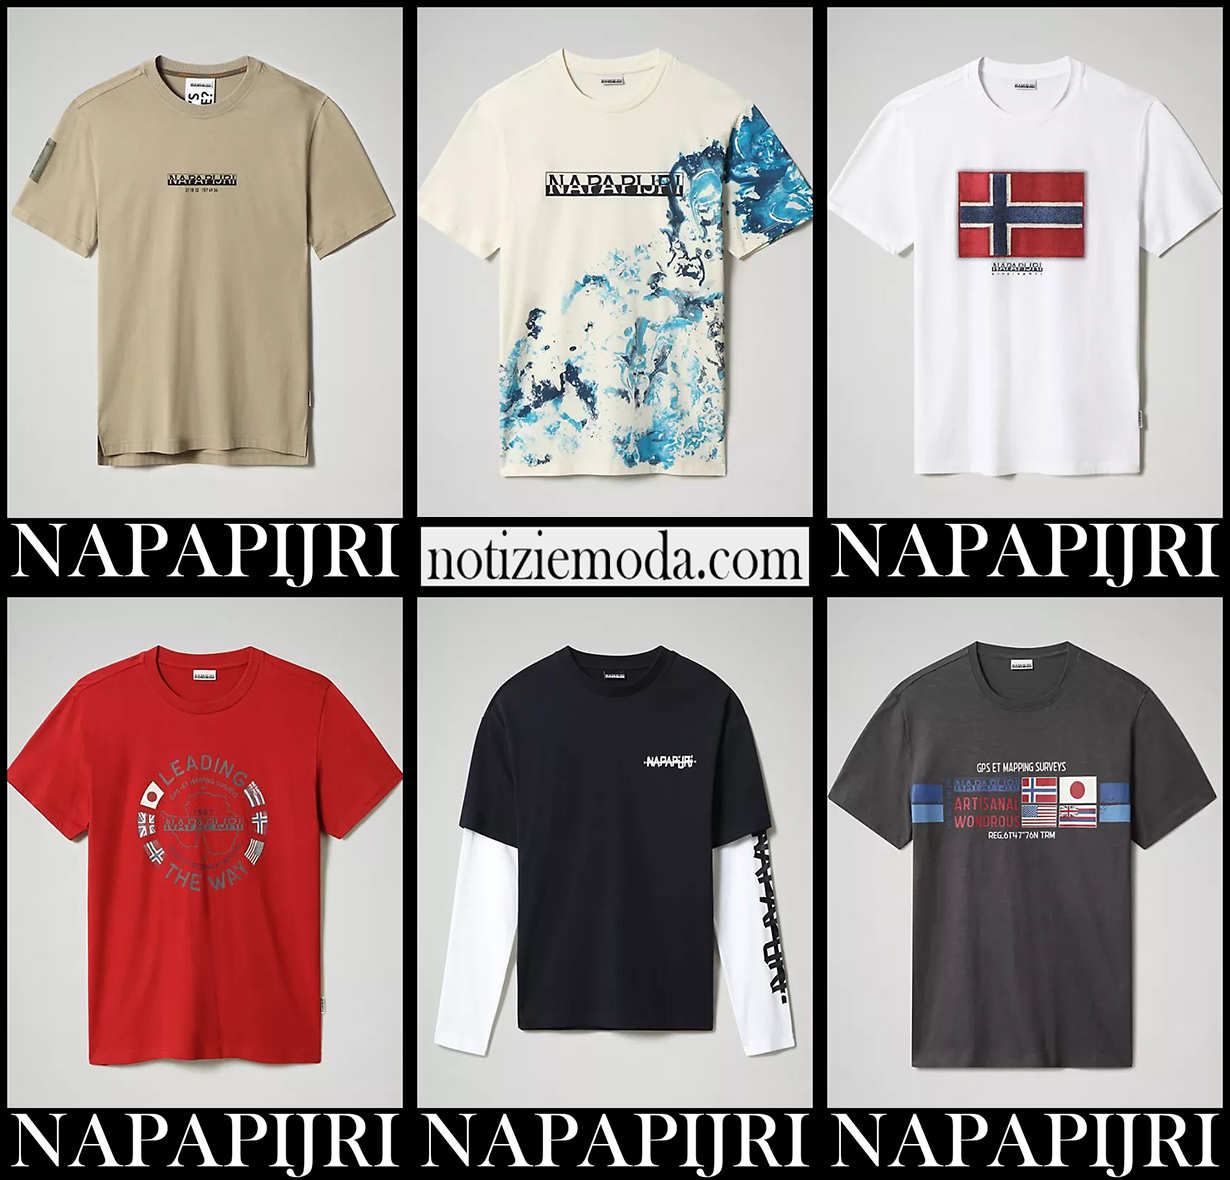 Nuovi arrivi t shirts Napapijri 2021 abbigliamento uomo